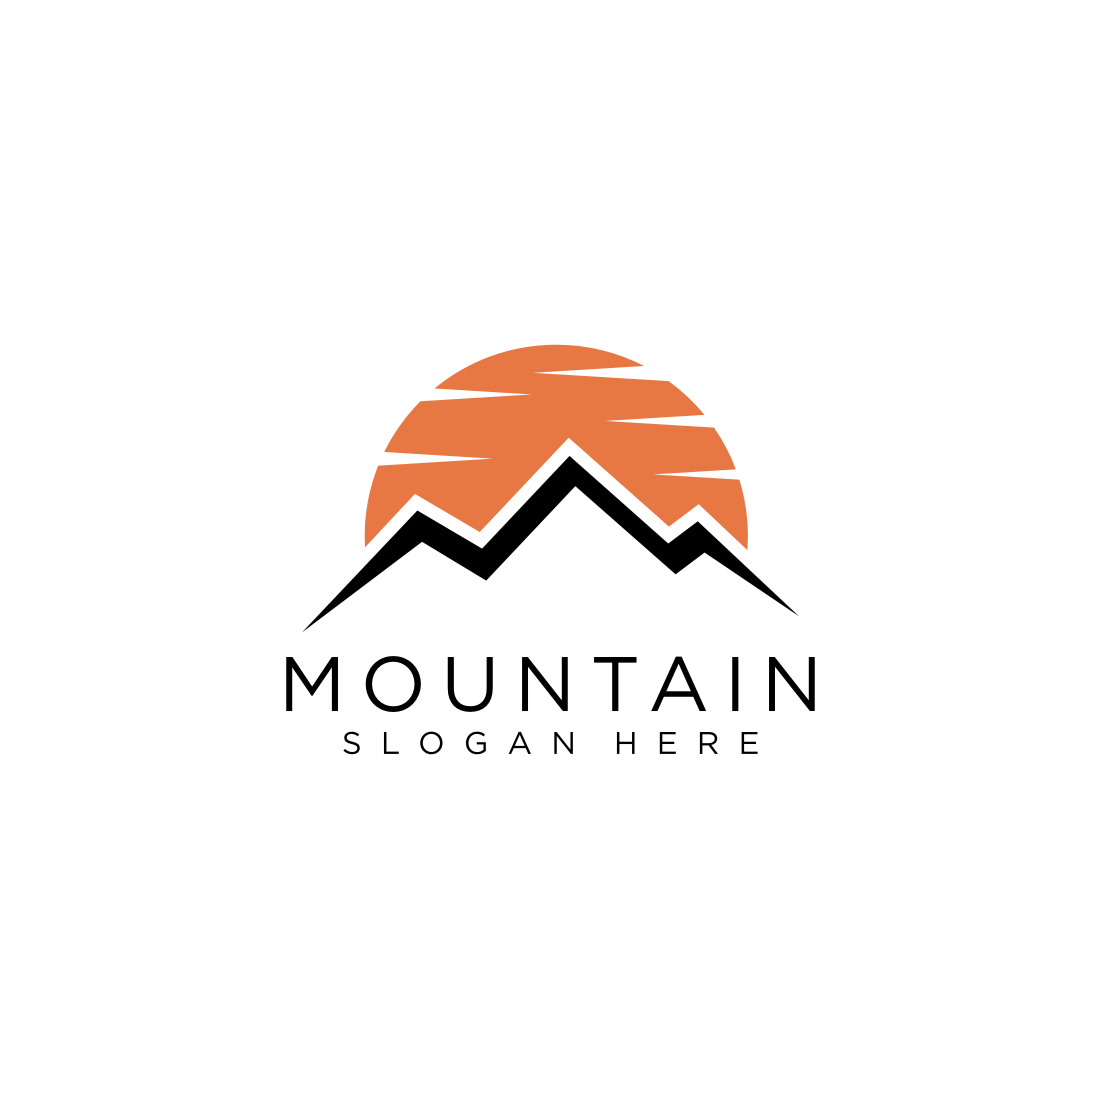 mountain logo vector design cover image.